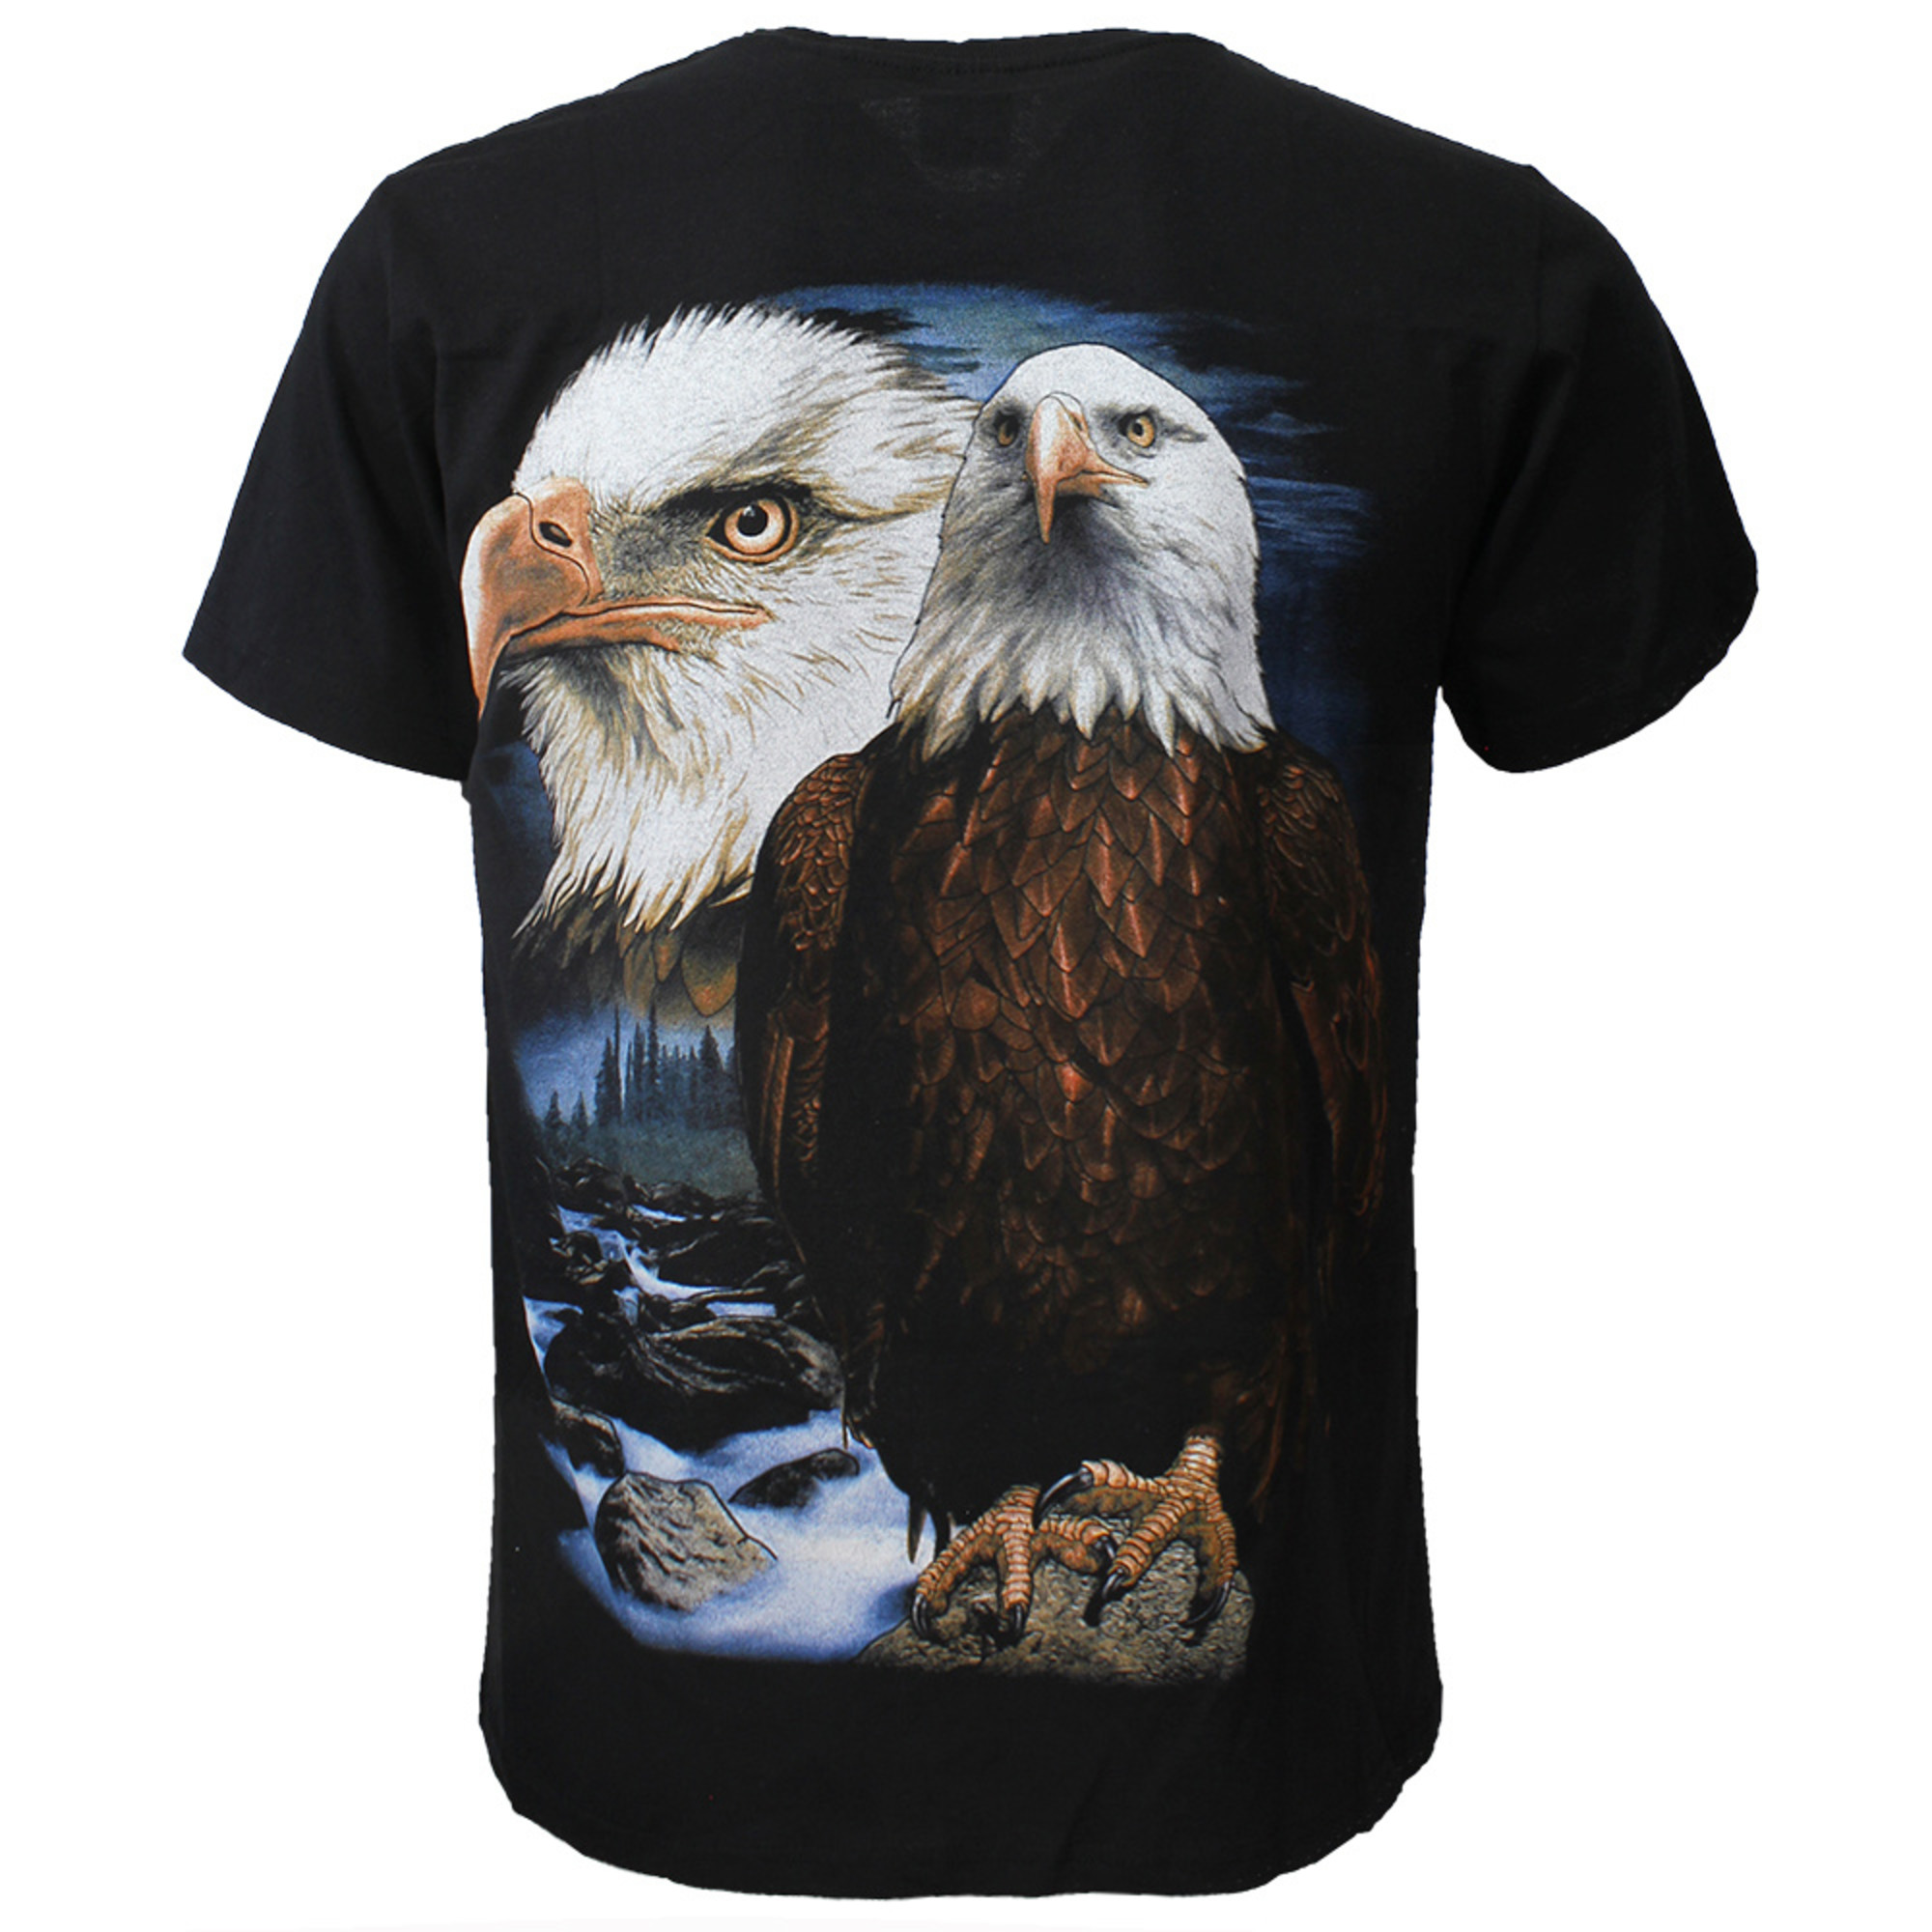 Bald Eagle T-Shirt Black - Popmerch.com